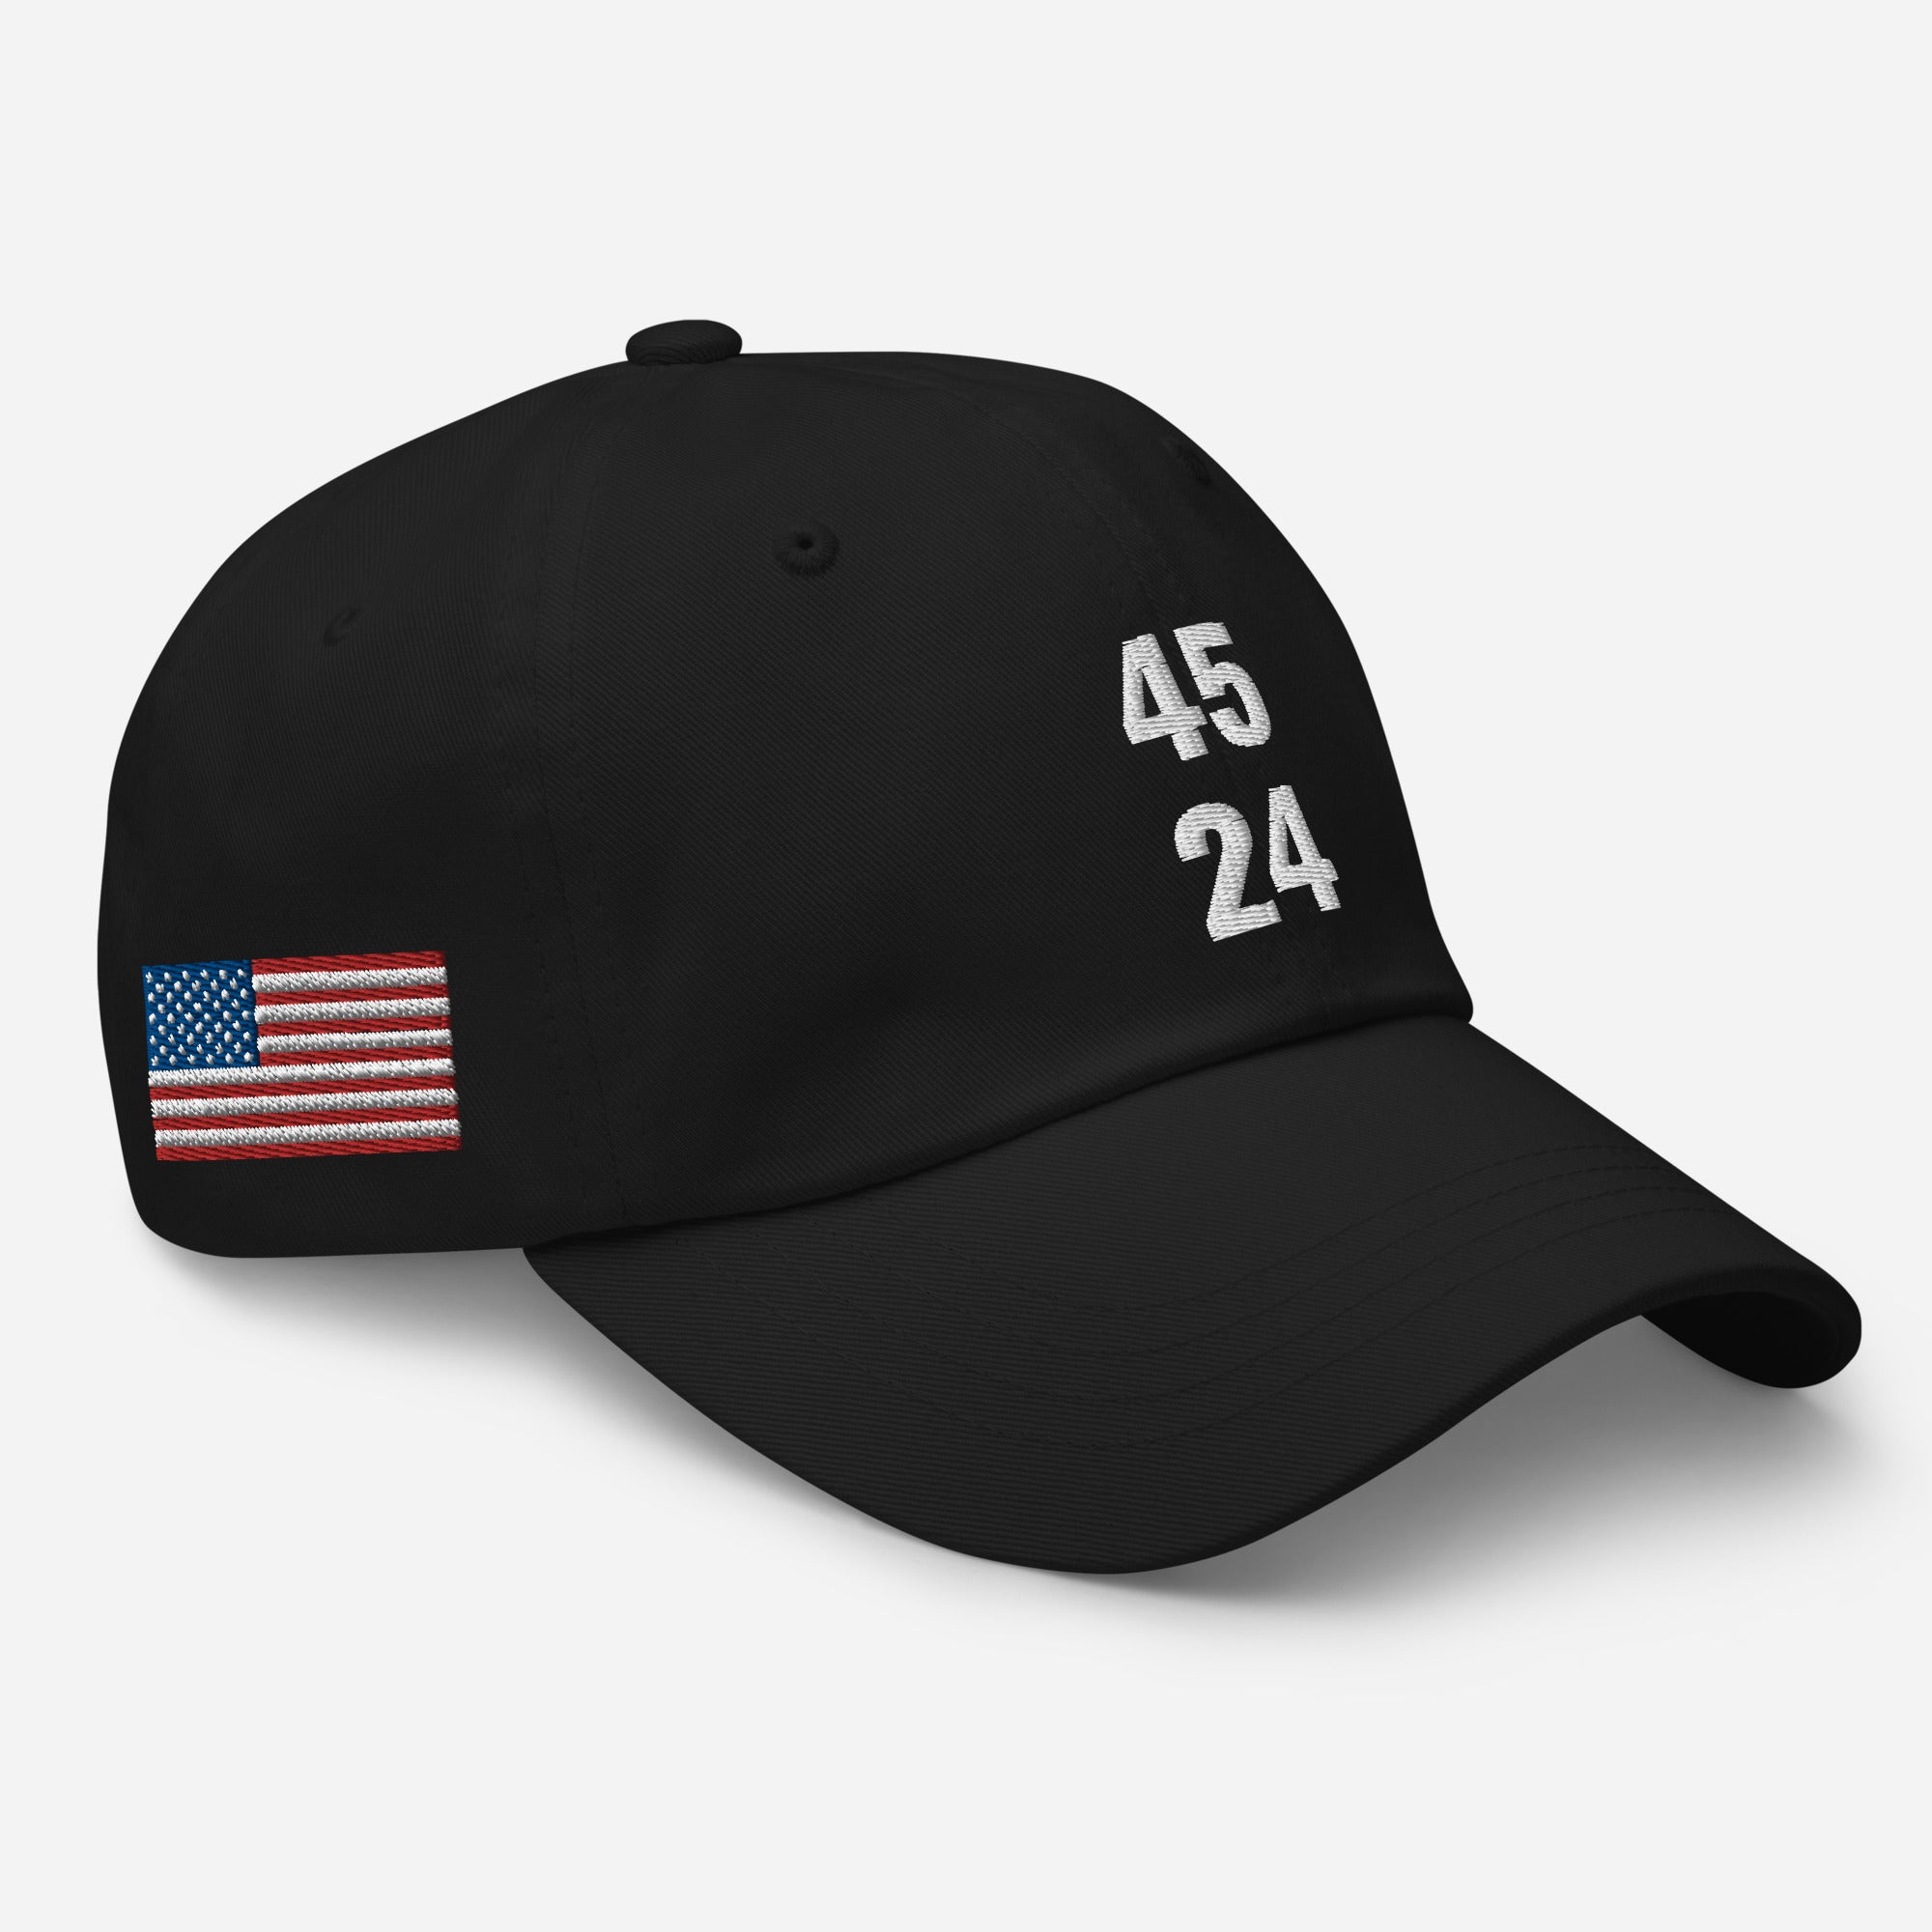 45 24 Trump 2024 Dad Hat, 45 MAGA hat, 45 trump cap, 45 dad cap, 45 red Donald Trump cap, Republican hats, American flag hat